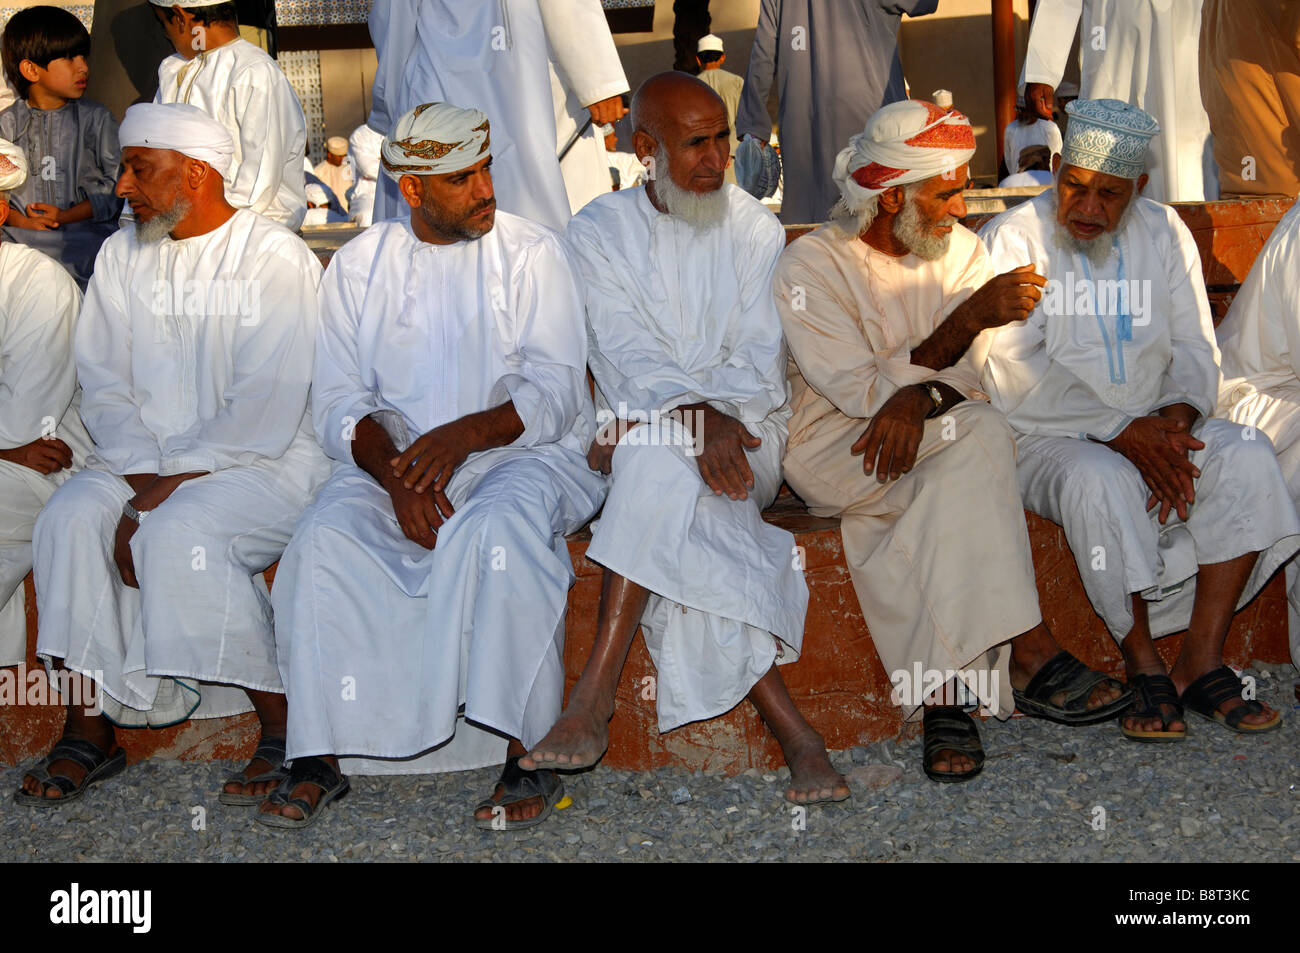 Groupe d'hommes omanais dans le costume national et une kummah Dishdasha cap ou d'un turban sur la tête mussar, Nizwa, Sultanat d'Oman Banque D'Images